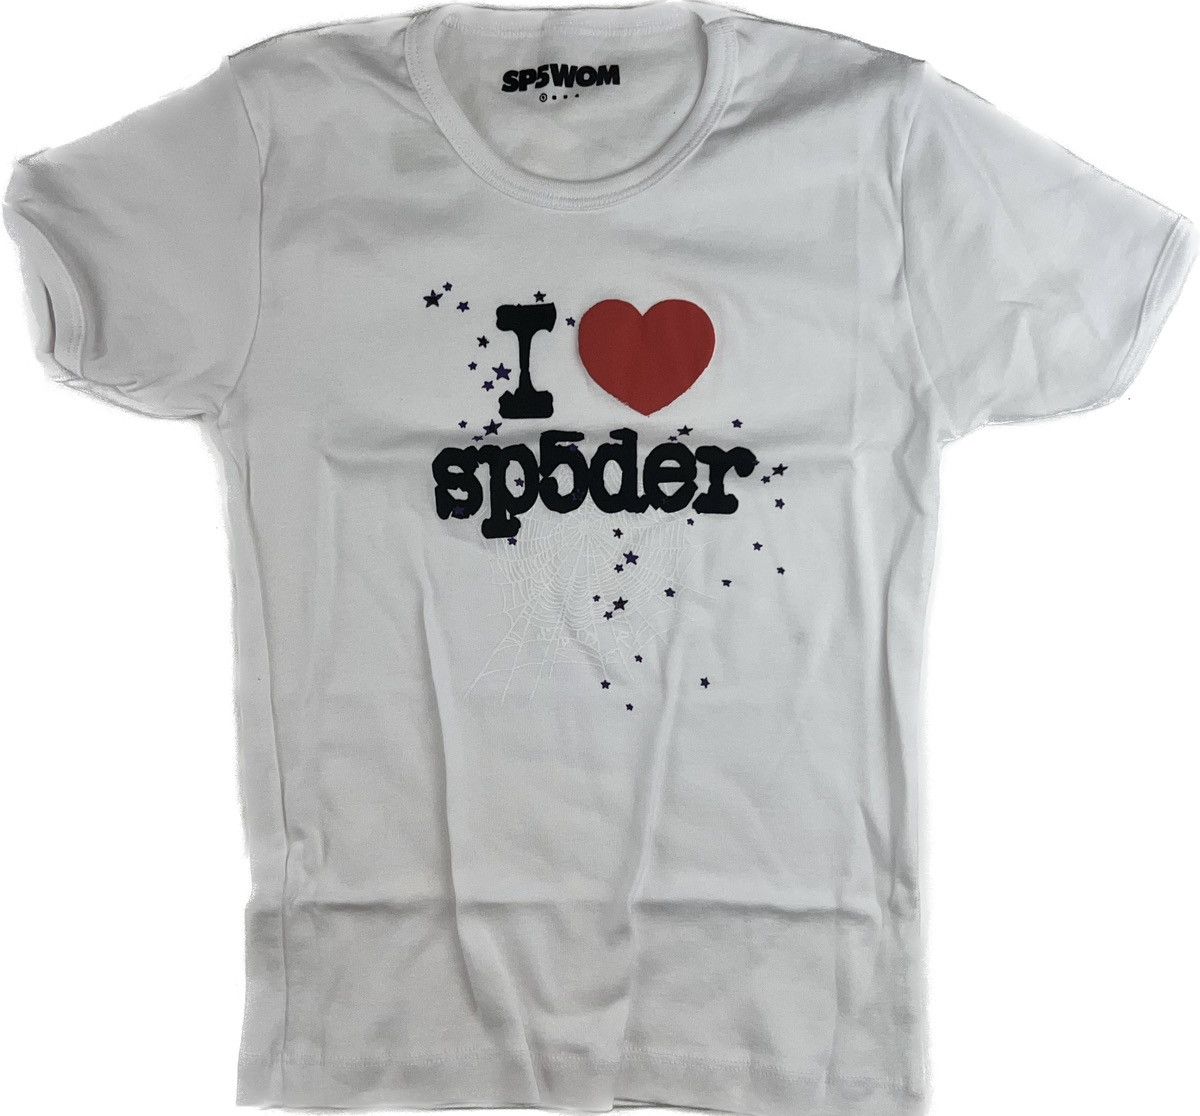 Spider Worldwide Sp5der Women’s I ️ Sp5der T-shirt | Grailed